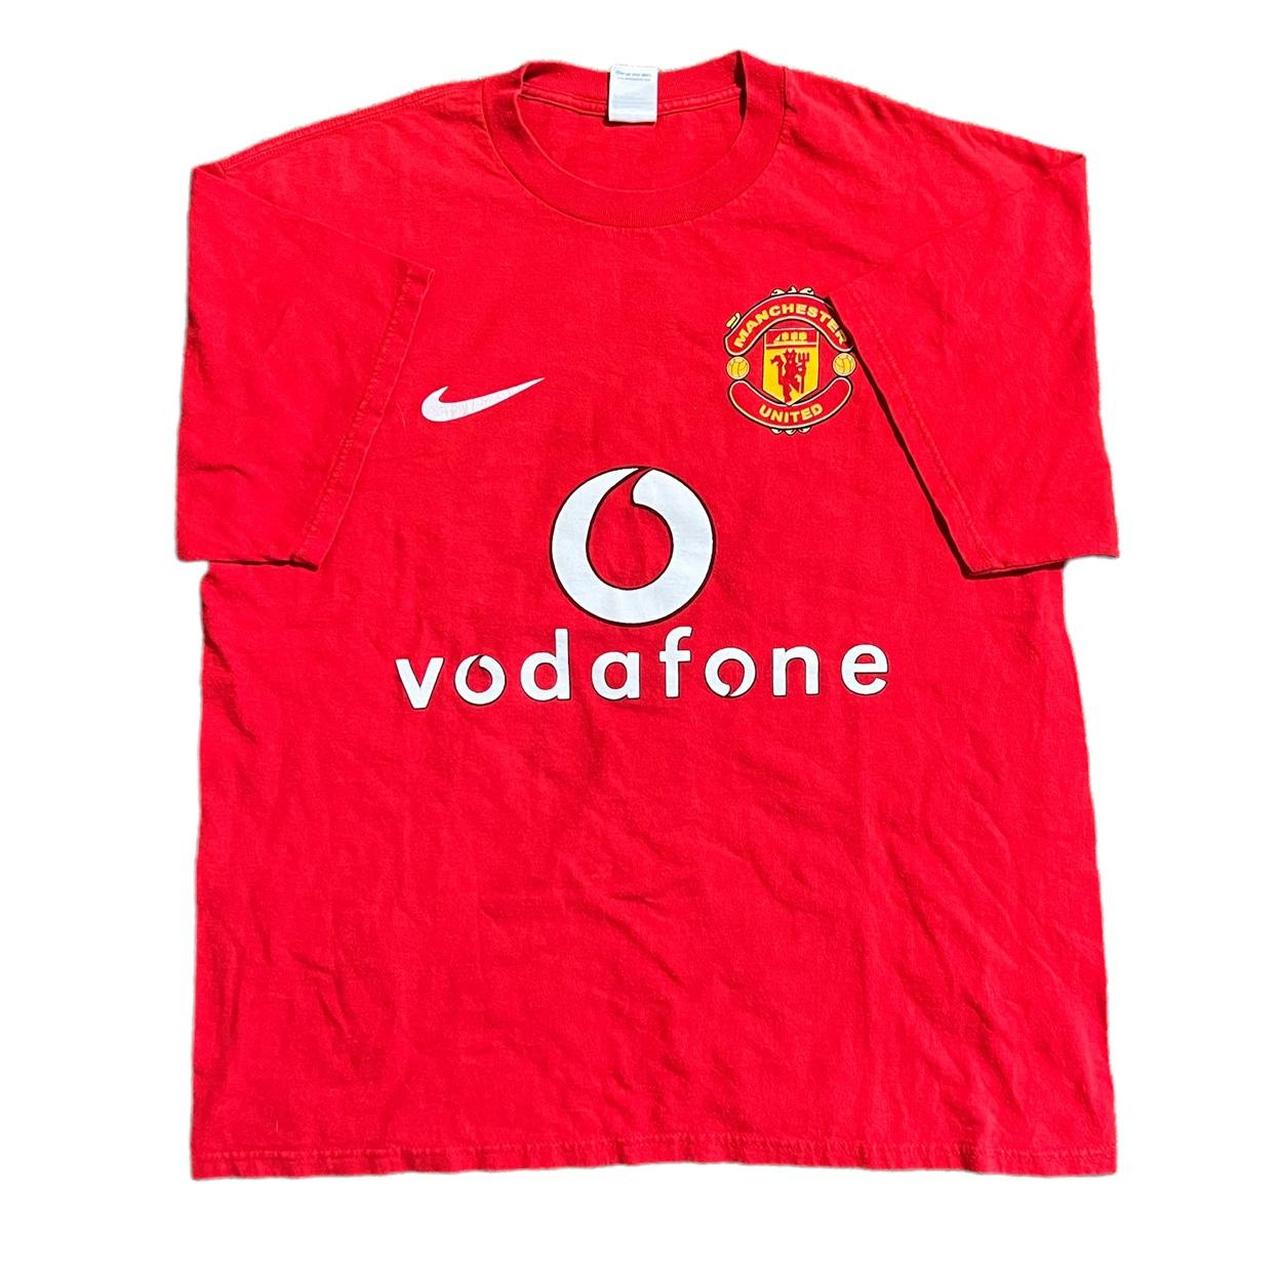 Product Image 1 - Vintage y2k Manchester United soccer